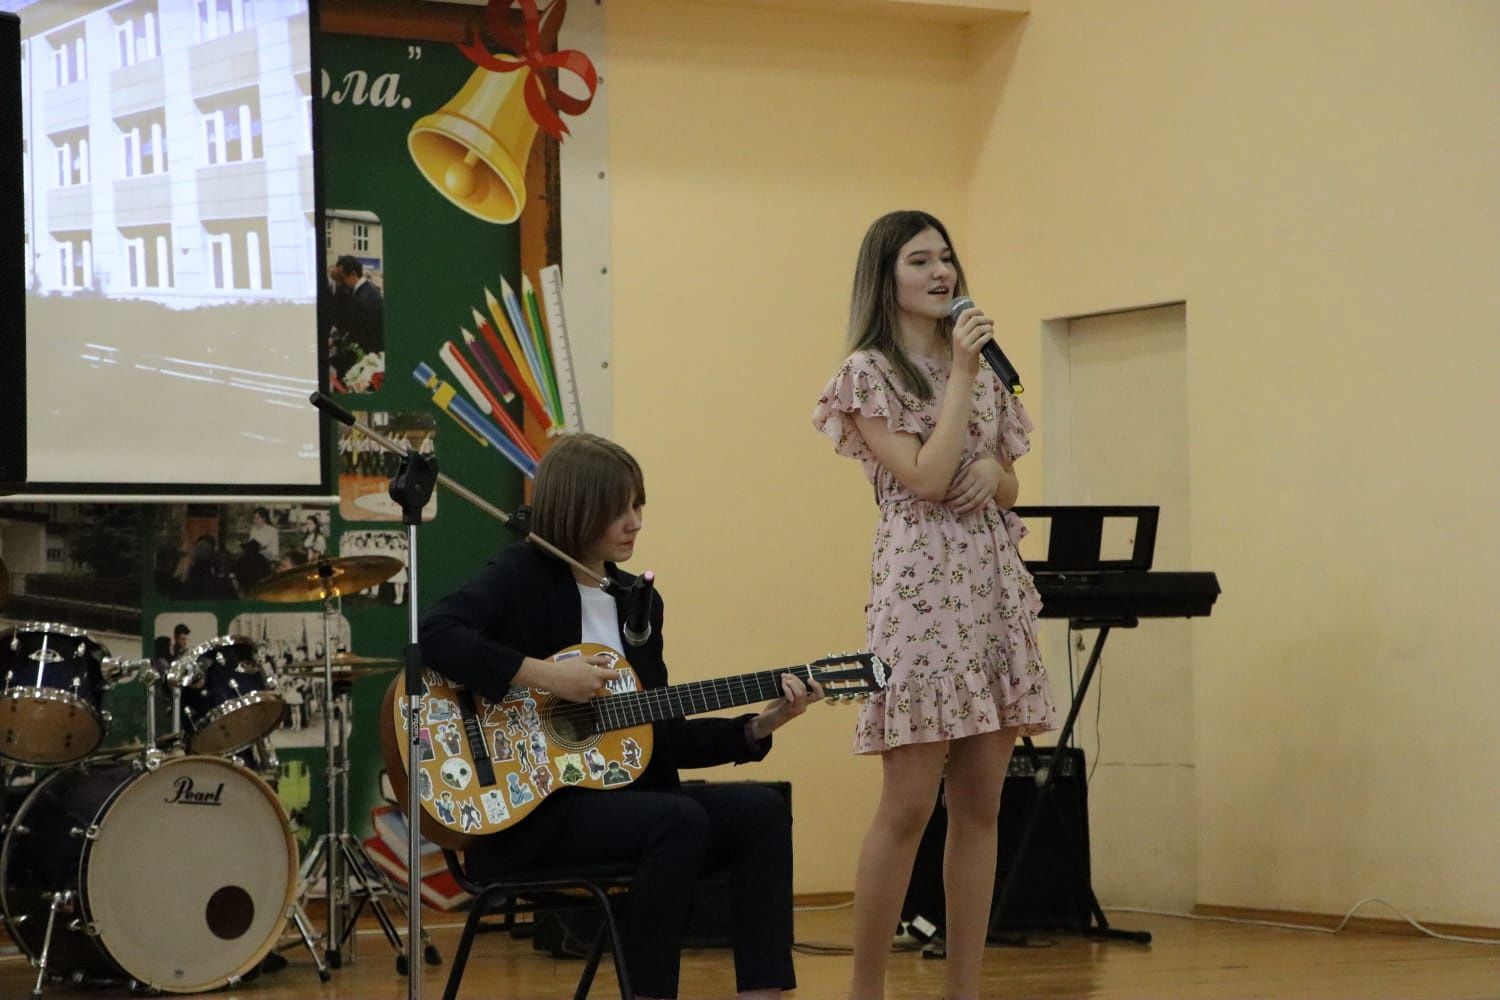 Менделеевские школьники участвовали в фестивале иностранных языков